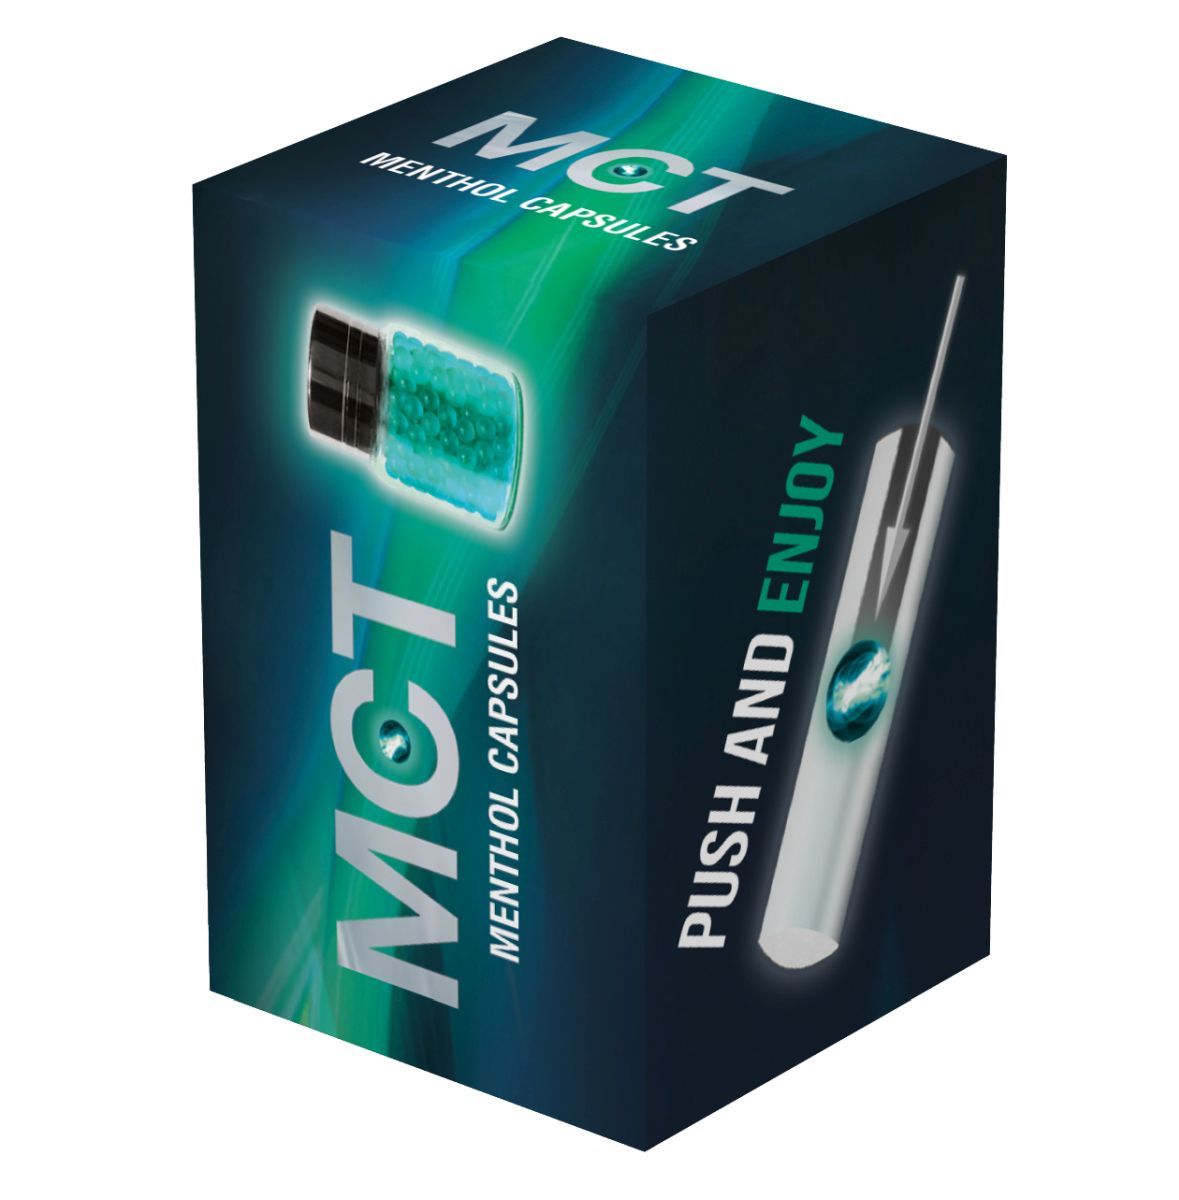 MCT Zigarettenhülsen Menthol 100 Stück online kaufen